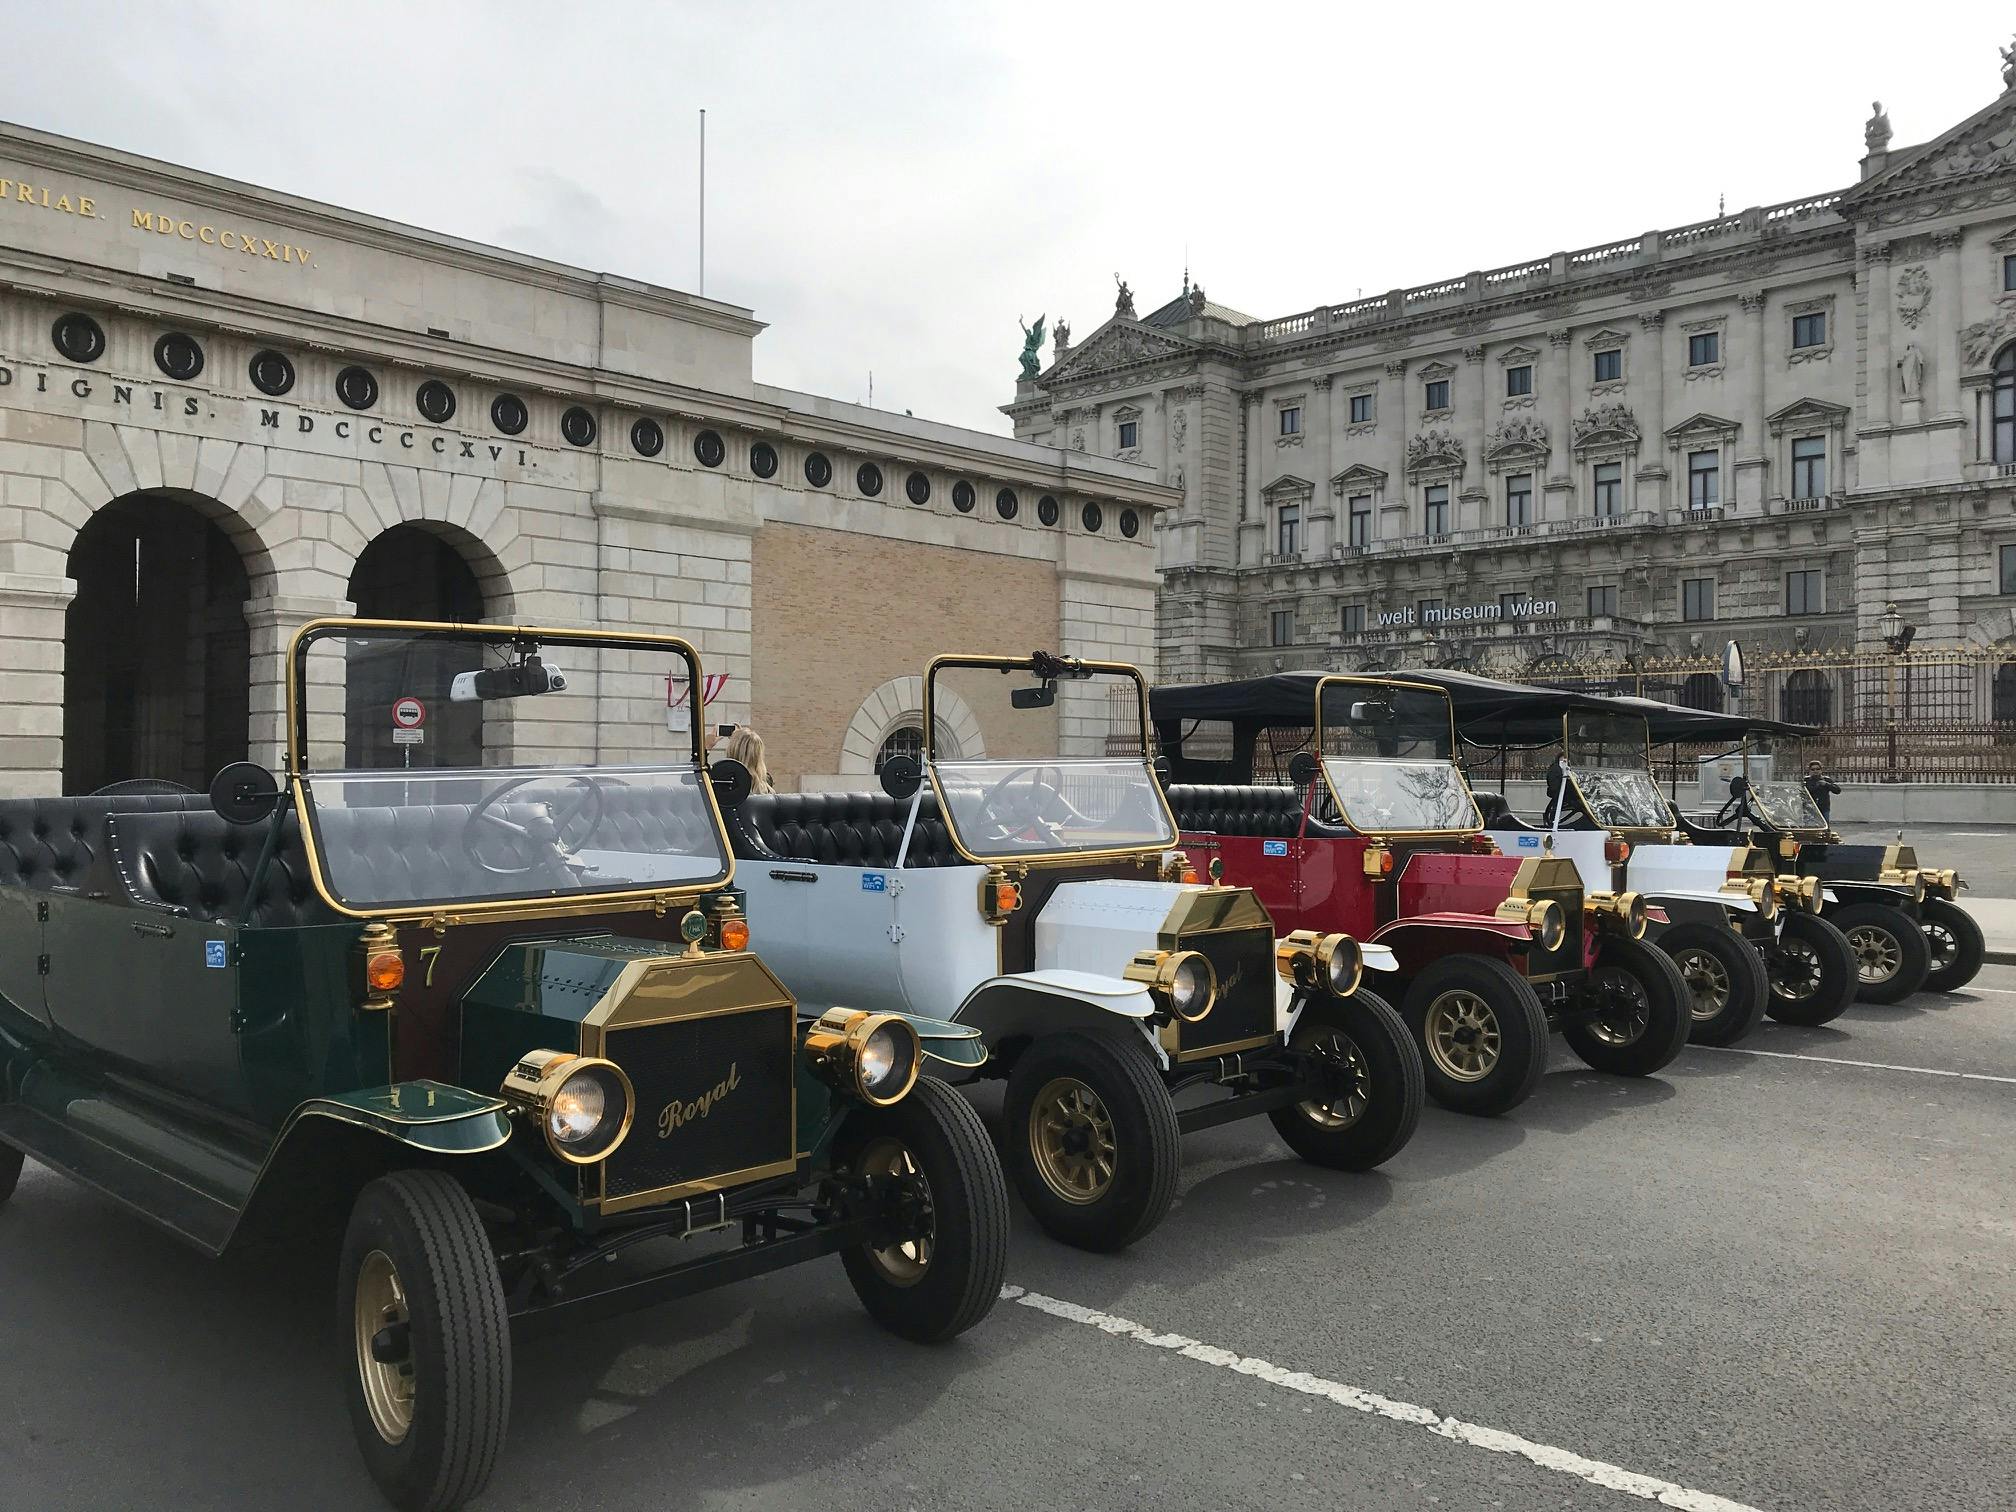 Excursão turística em carros antigos elétricos de 30 minutos em Viena